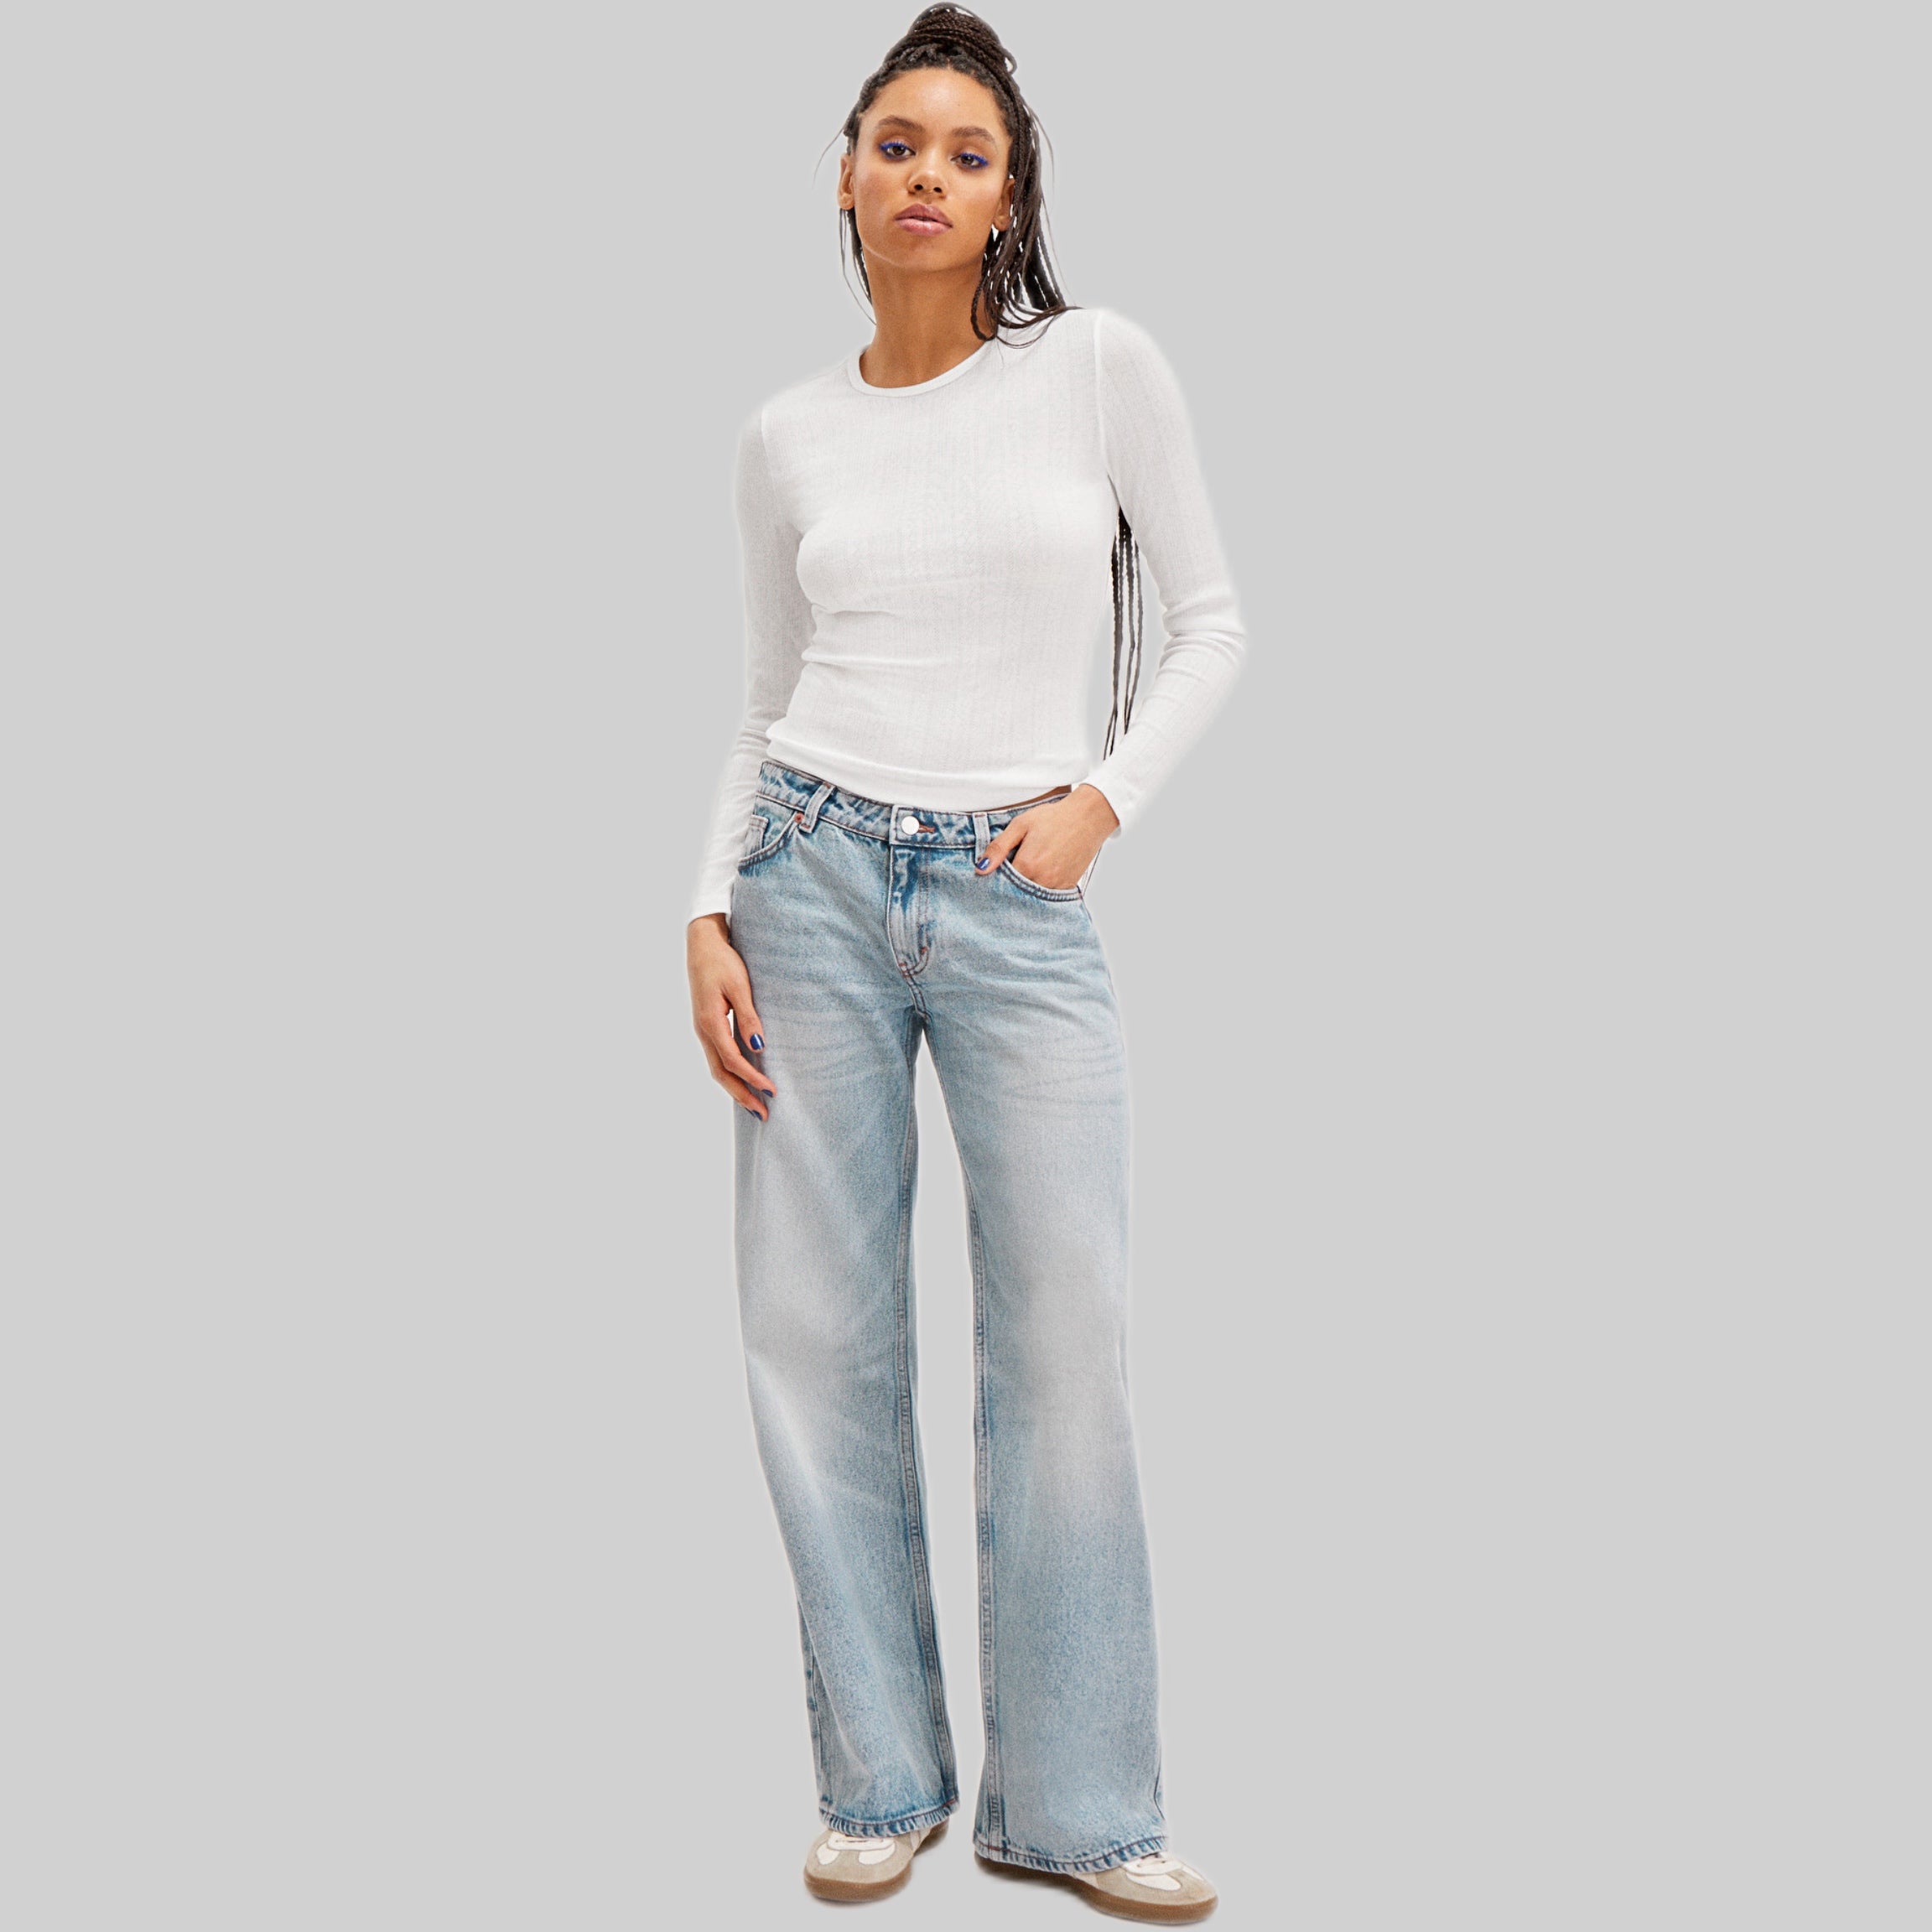 Monki jeans, women, frontside, blue, model